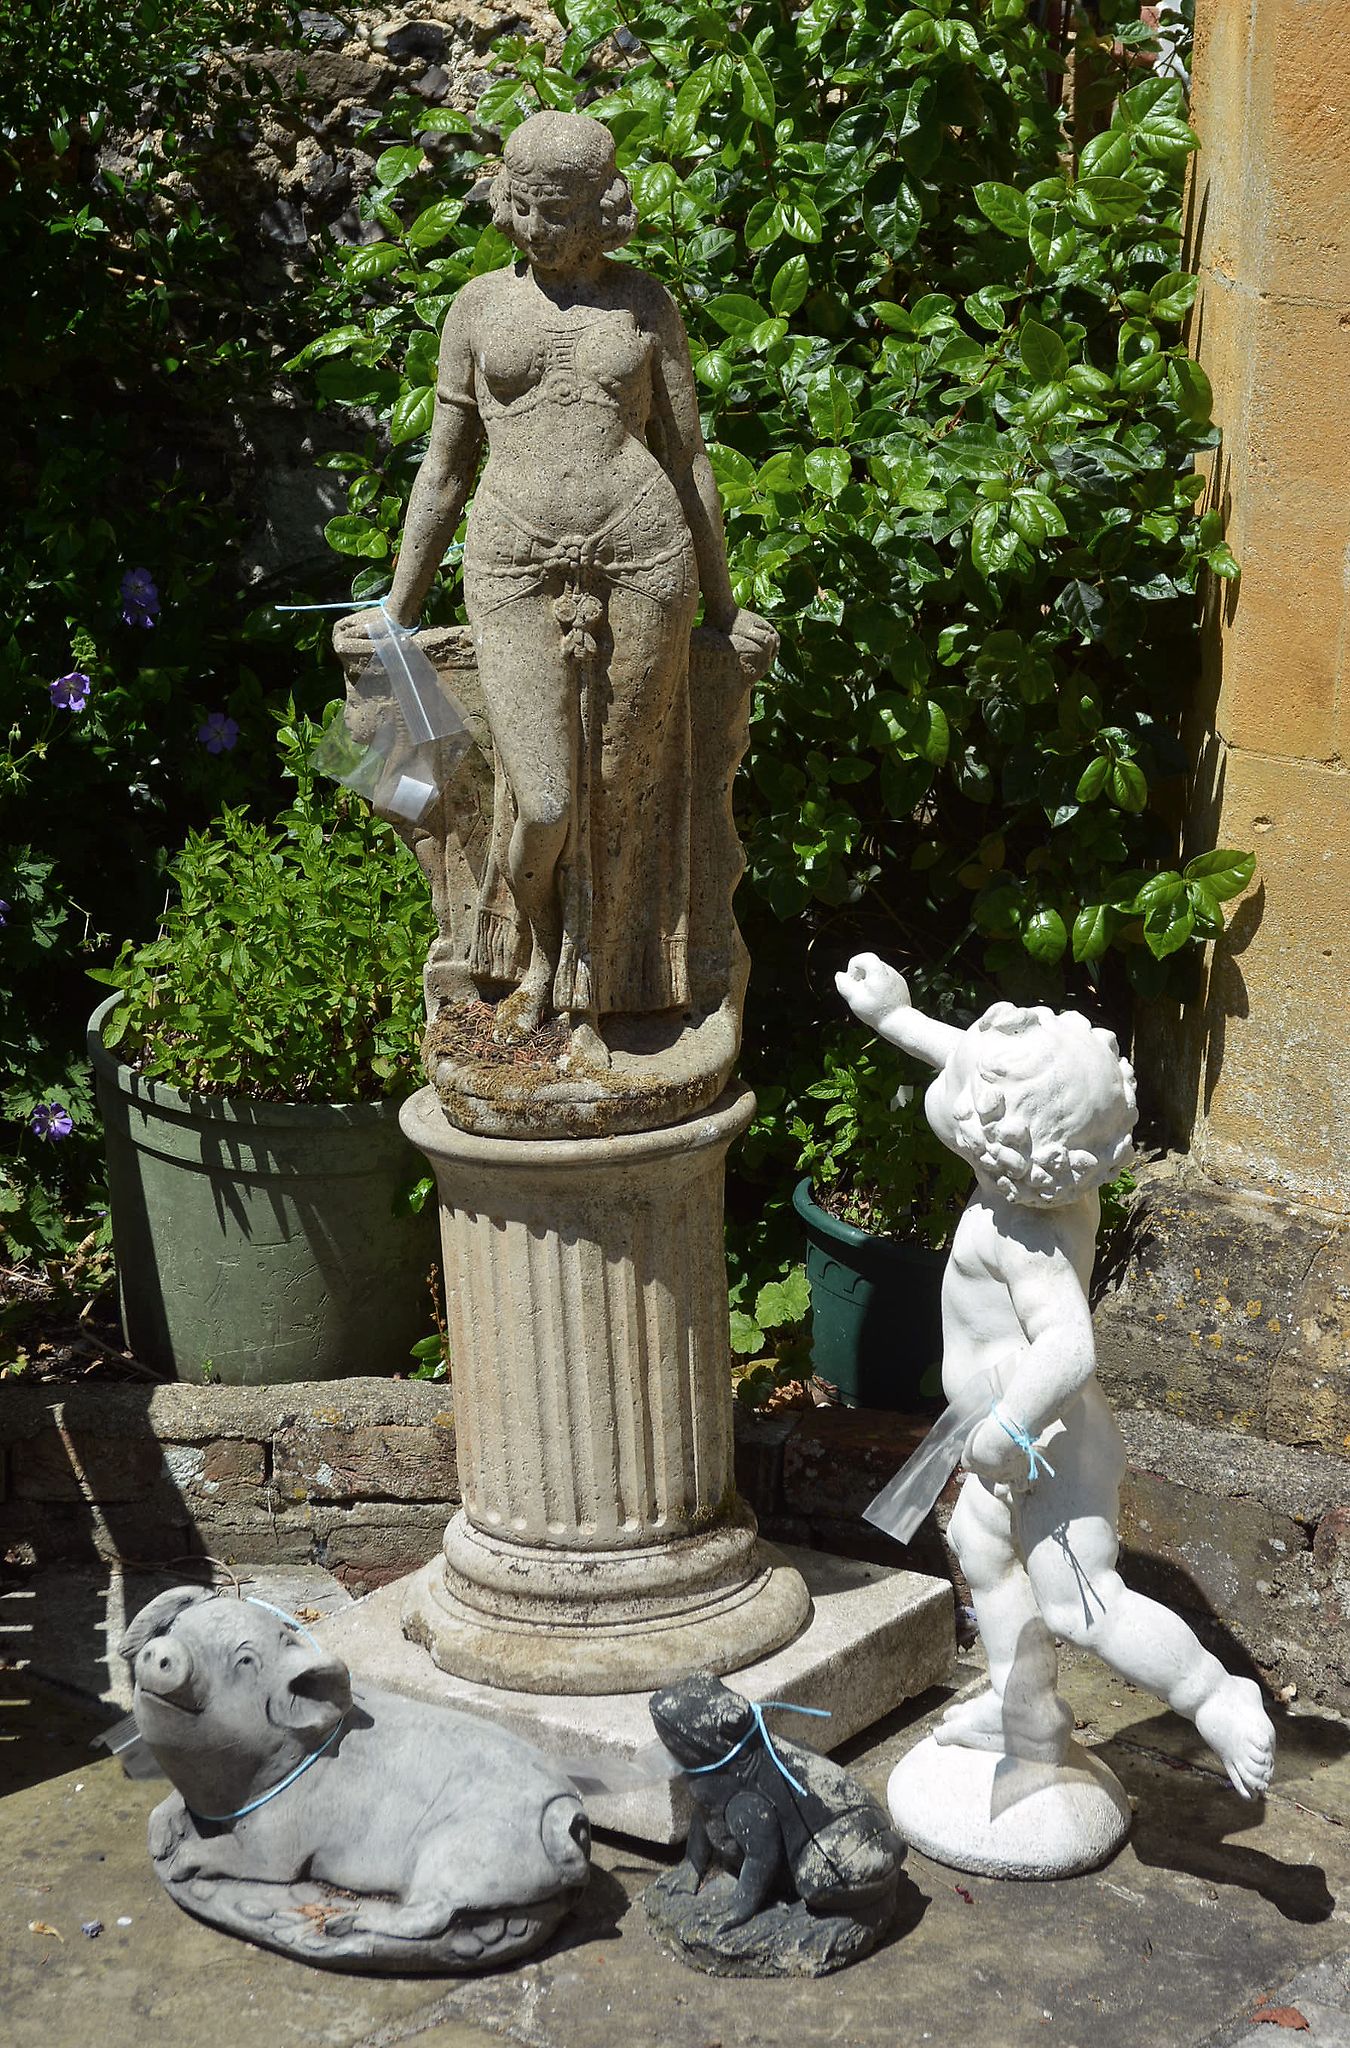 A stone composition garden model of a maiden